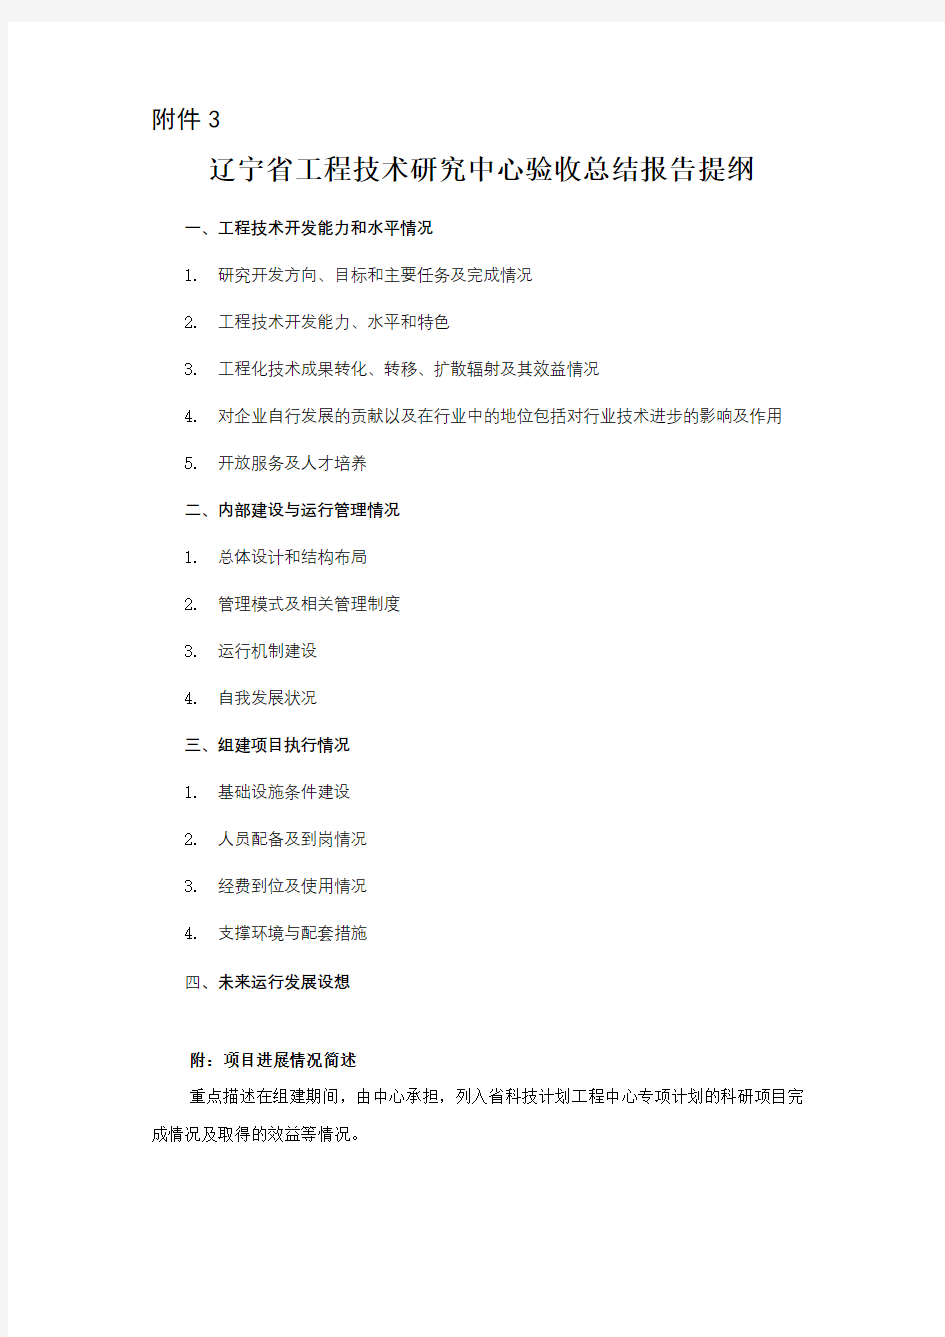 辽宁省工程技术研究中心验收总结报告提纲【模板】